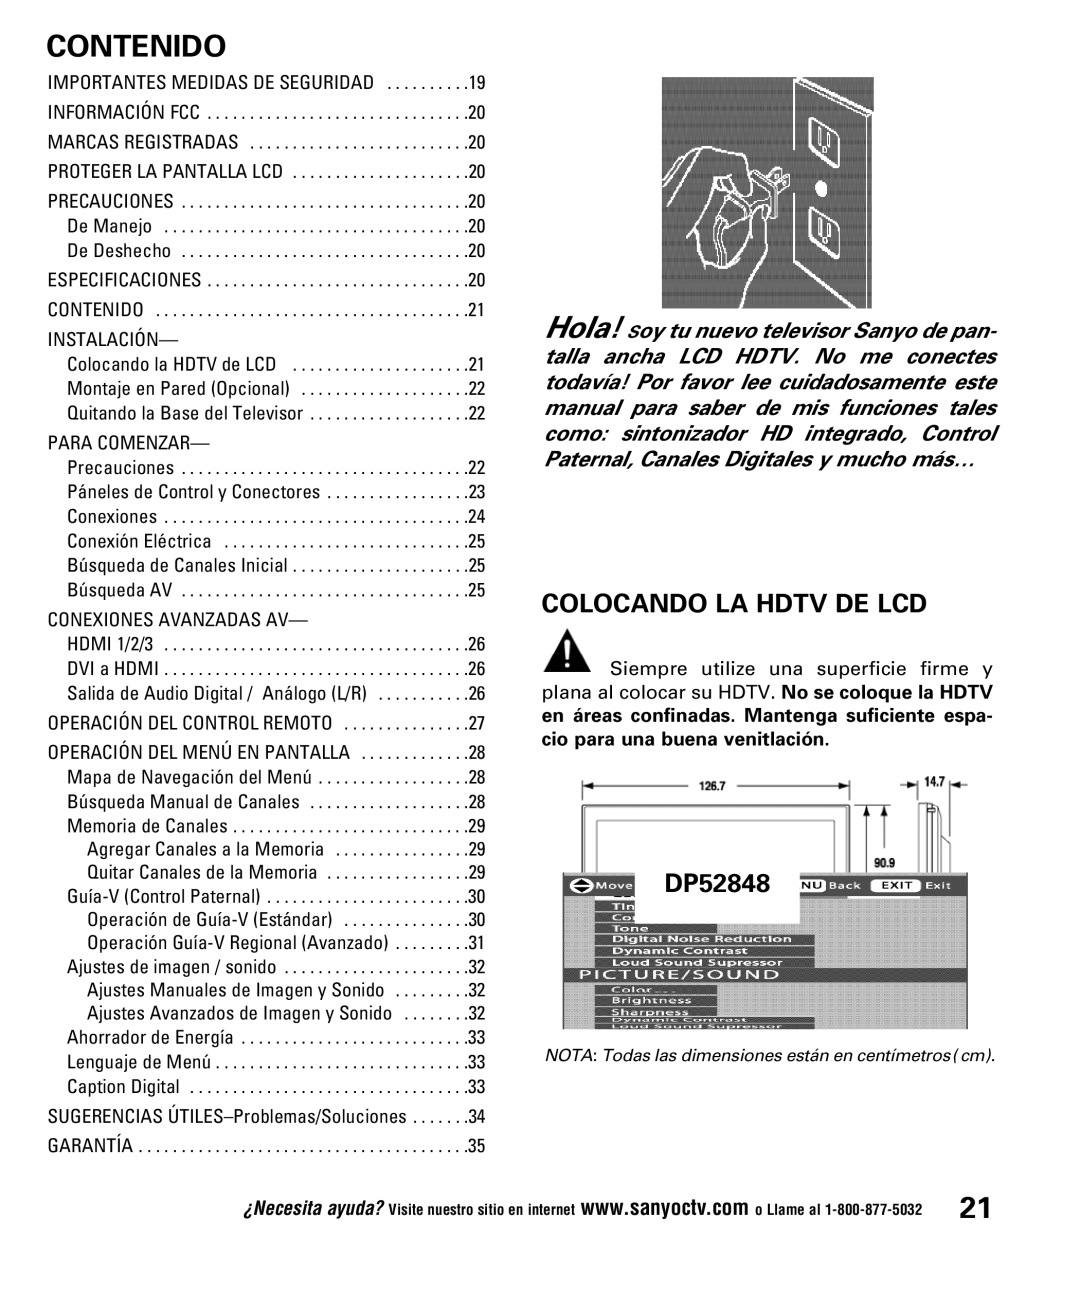 Sanyo DP52848 owner manual Contenido, Colocando LA Hdtv DE LCD 